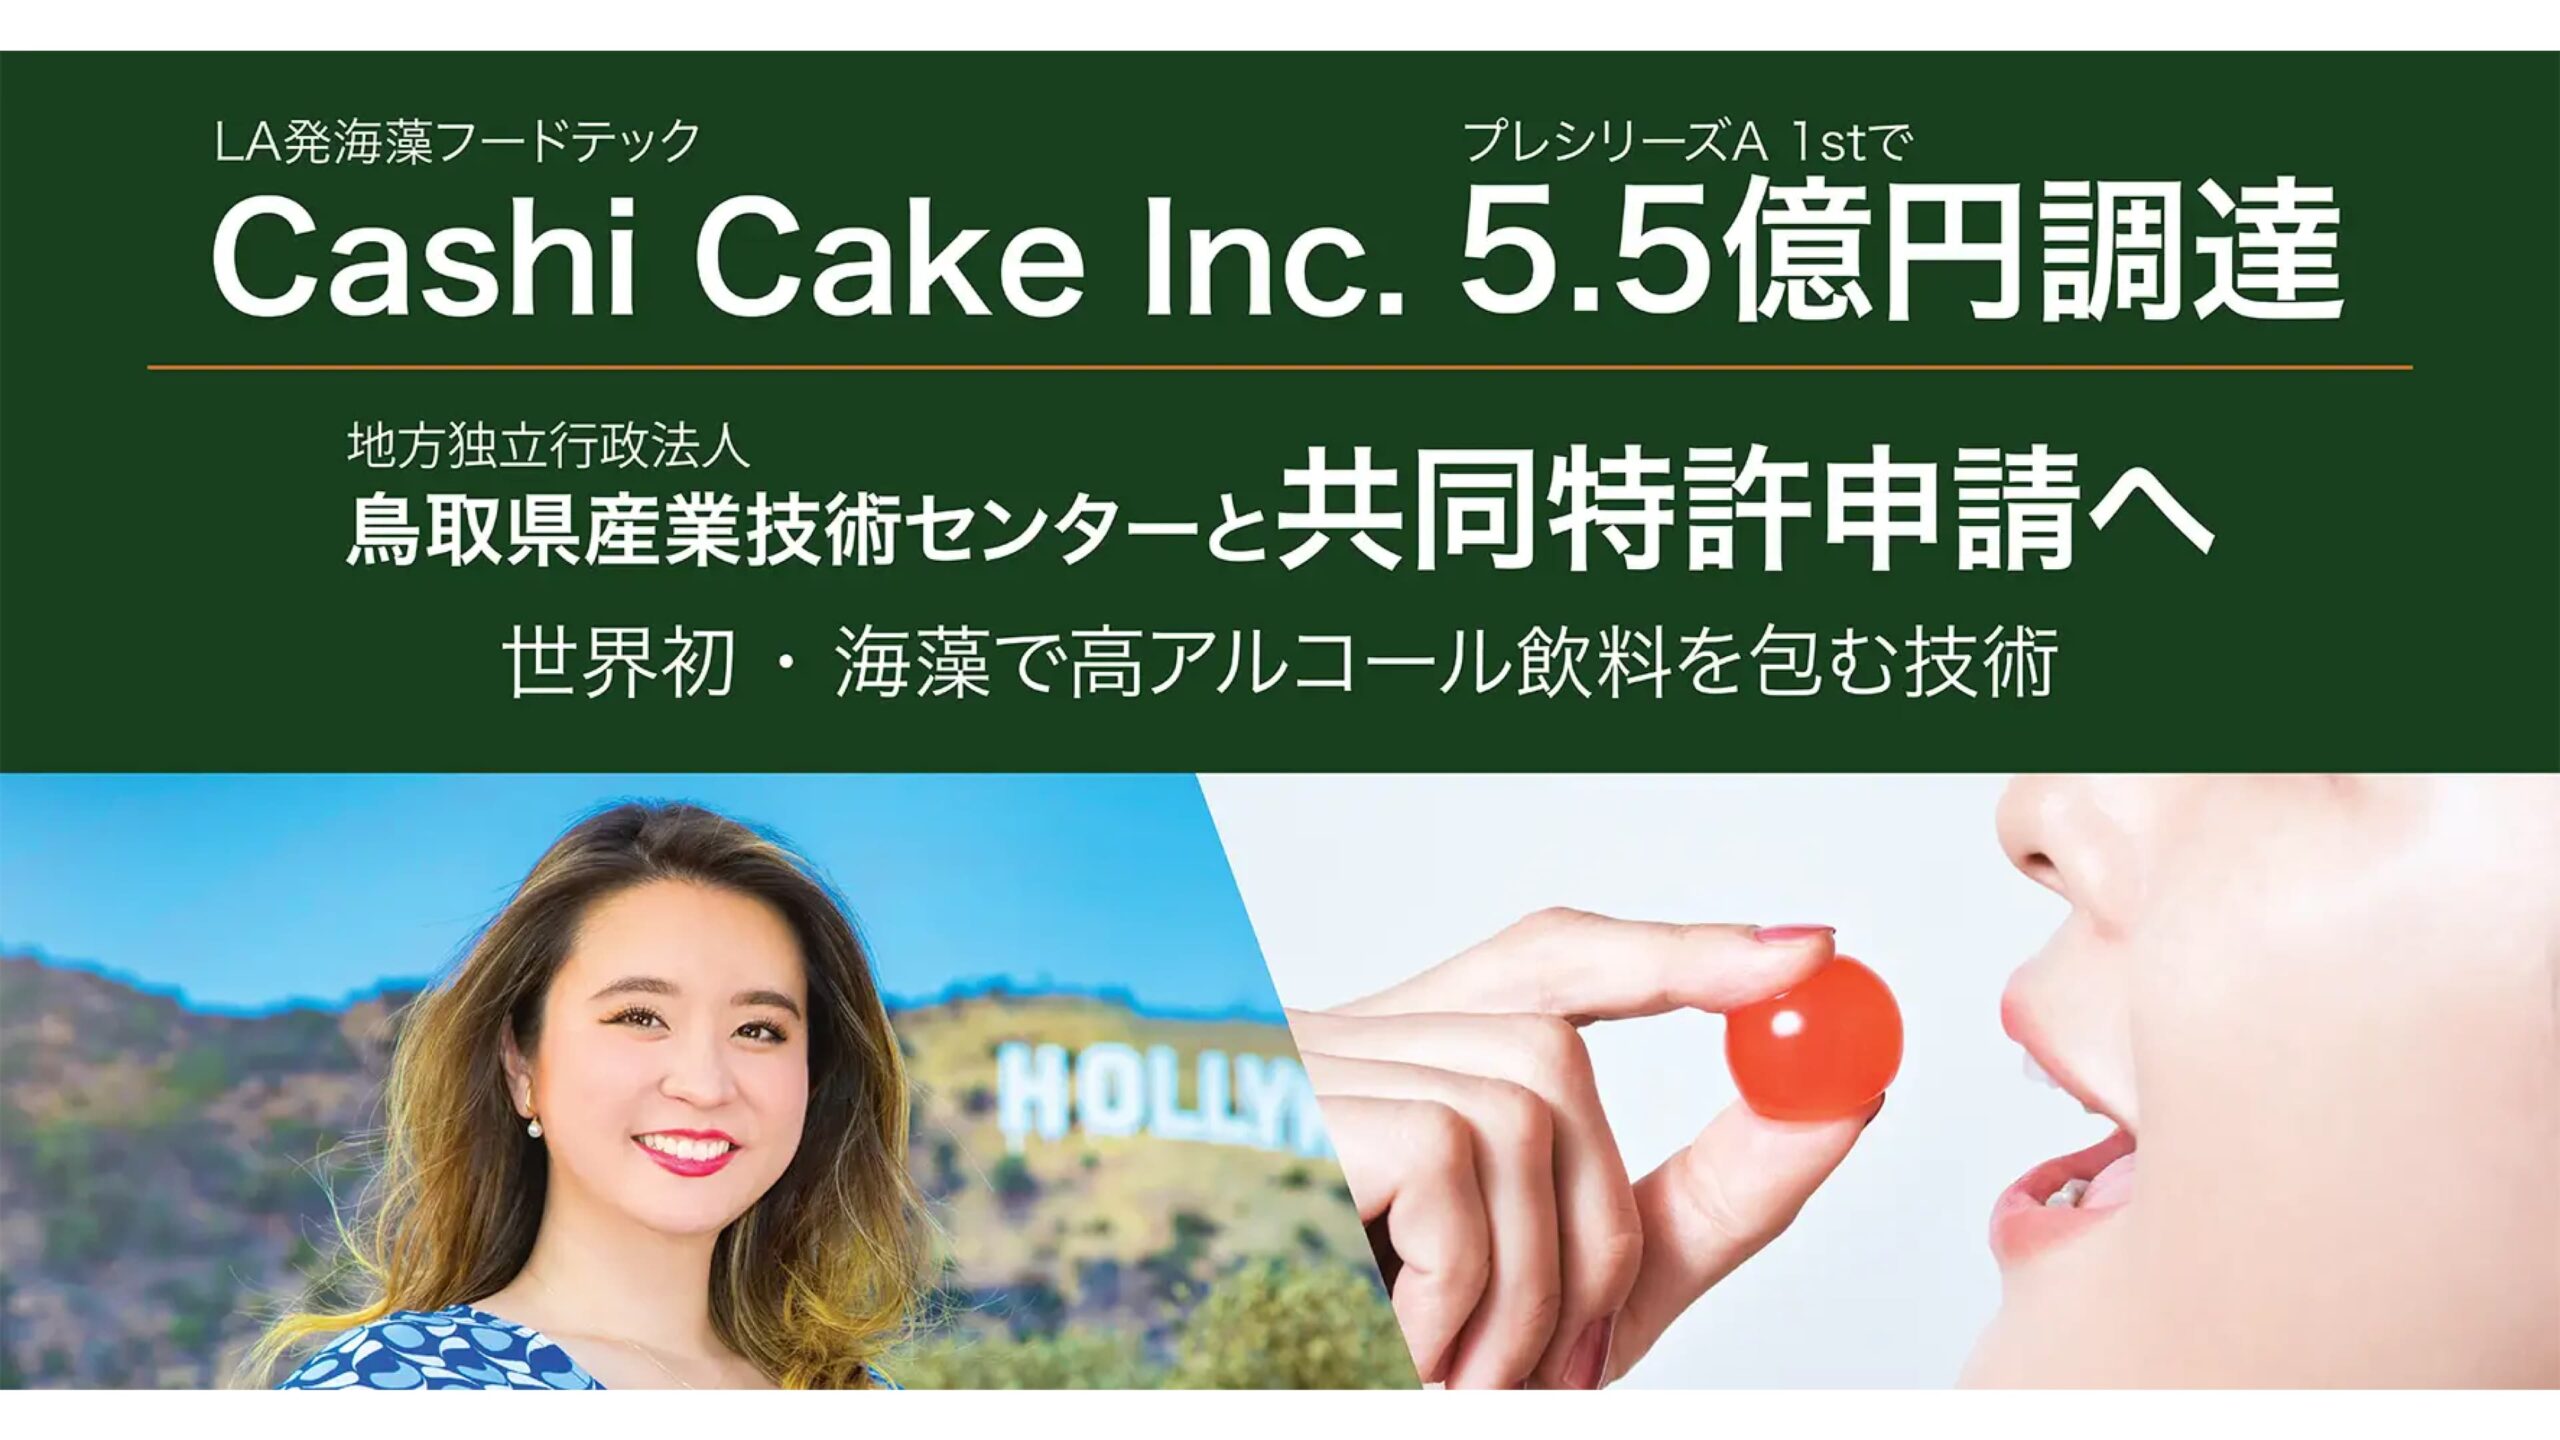 海藻を使ったフードテック事業を展開するCashi Cake inc. がプレシリーズAにて5.5億円の資金調達ー累計調達額は8.3億円に